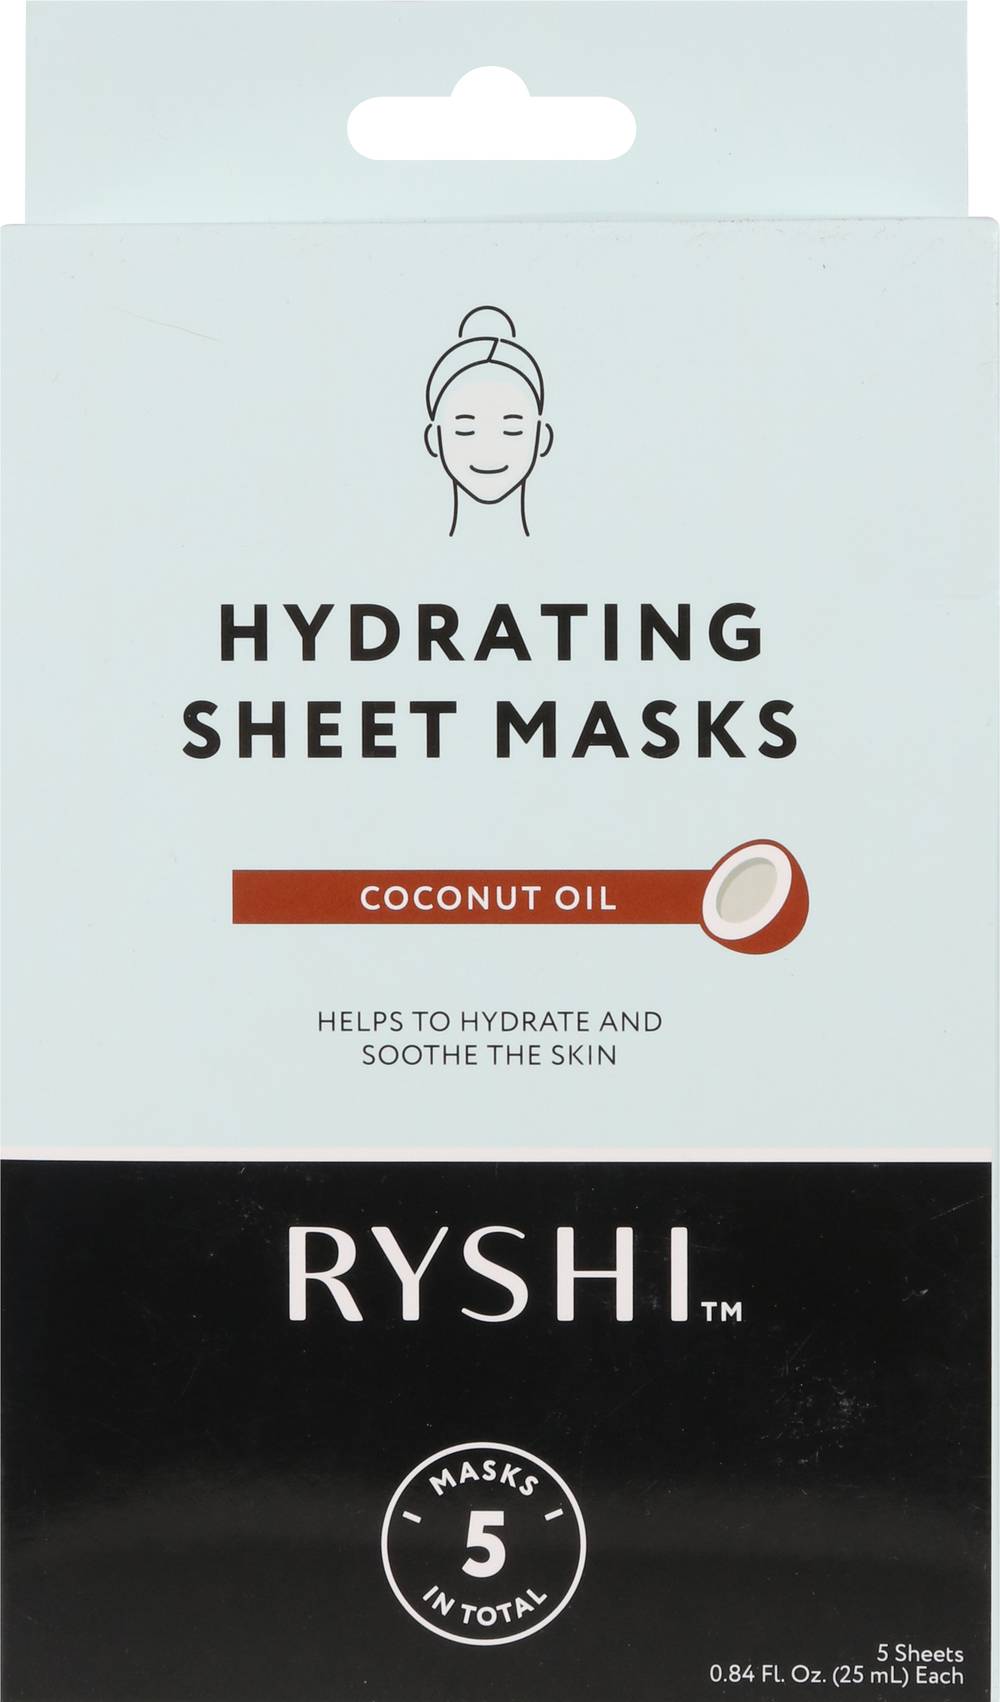 Ryshi Sheet Masks - Coconut